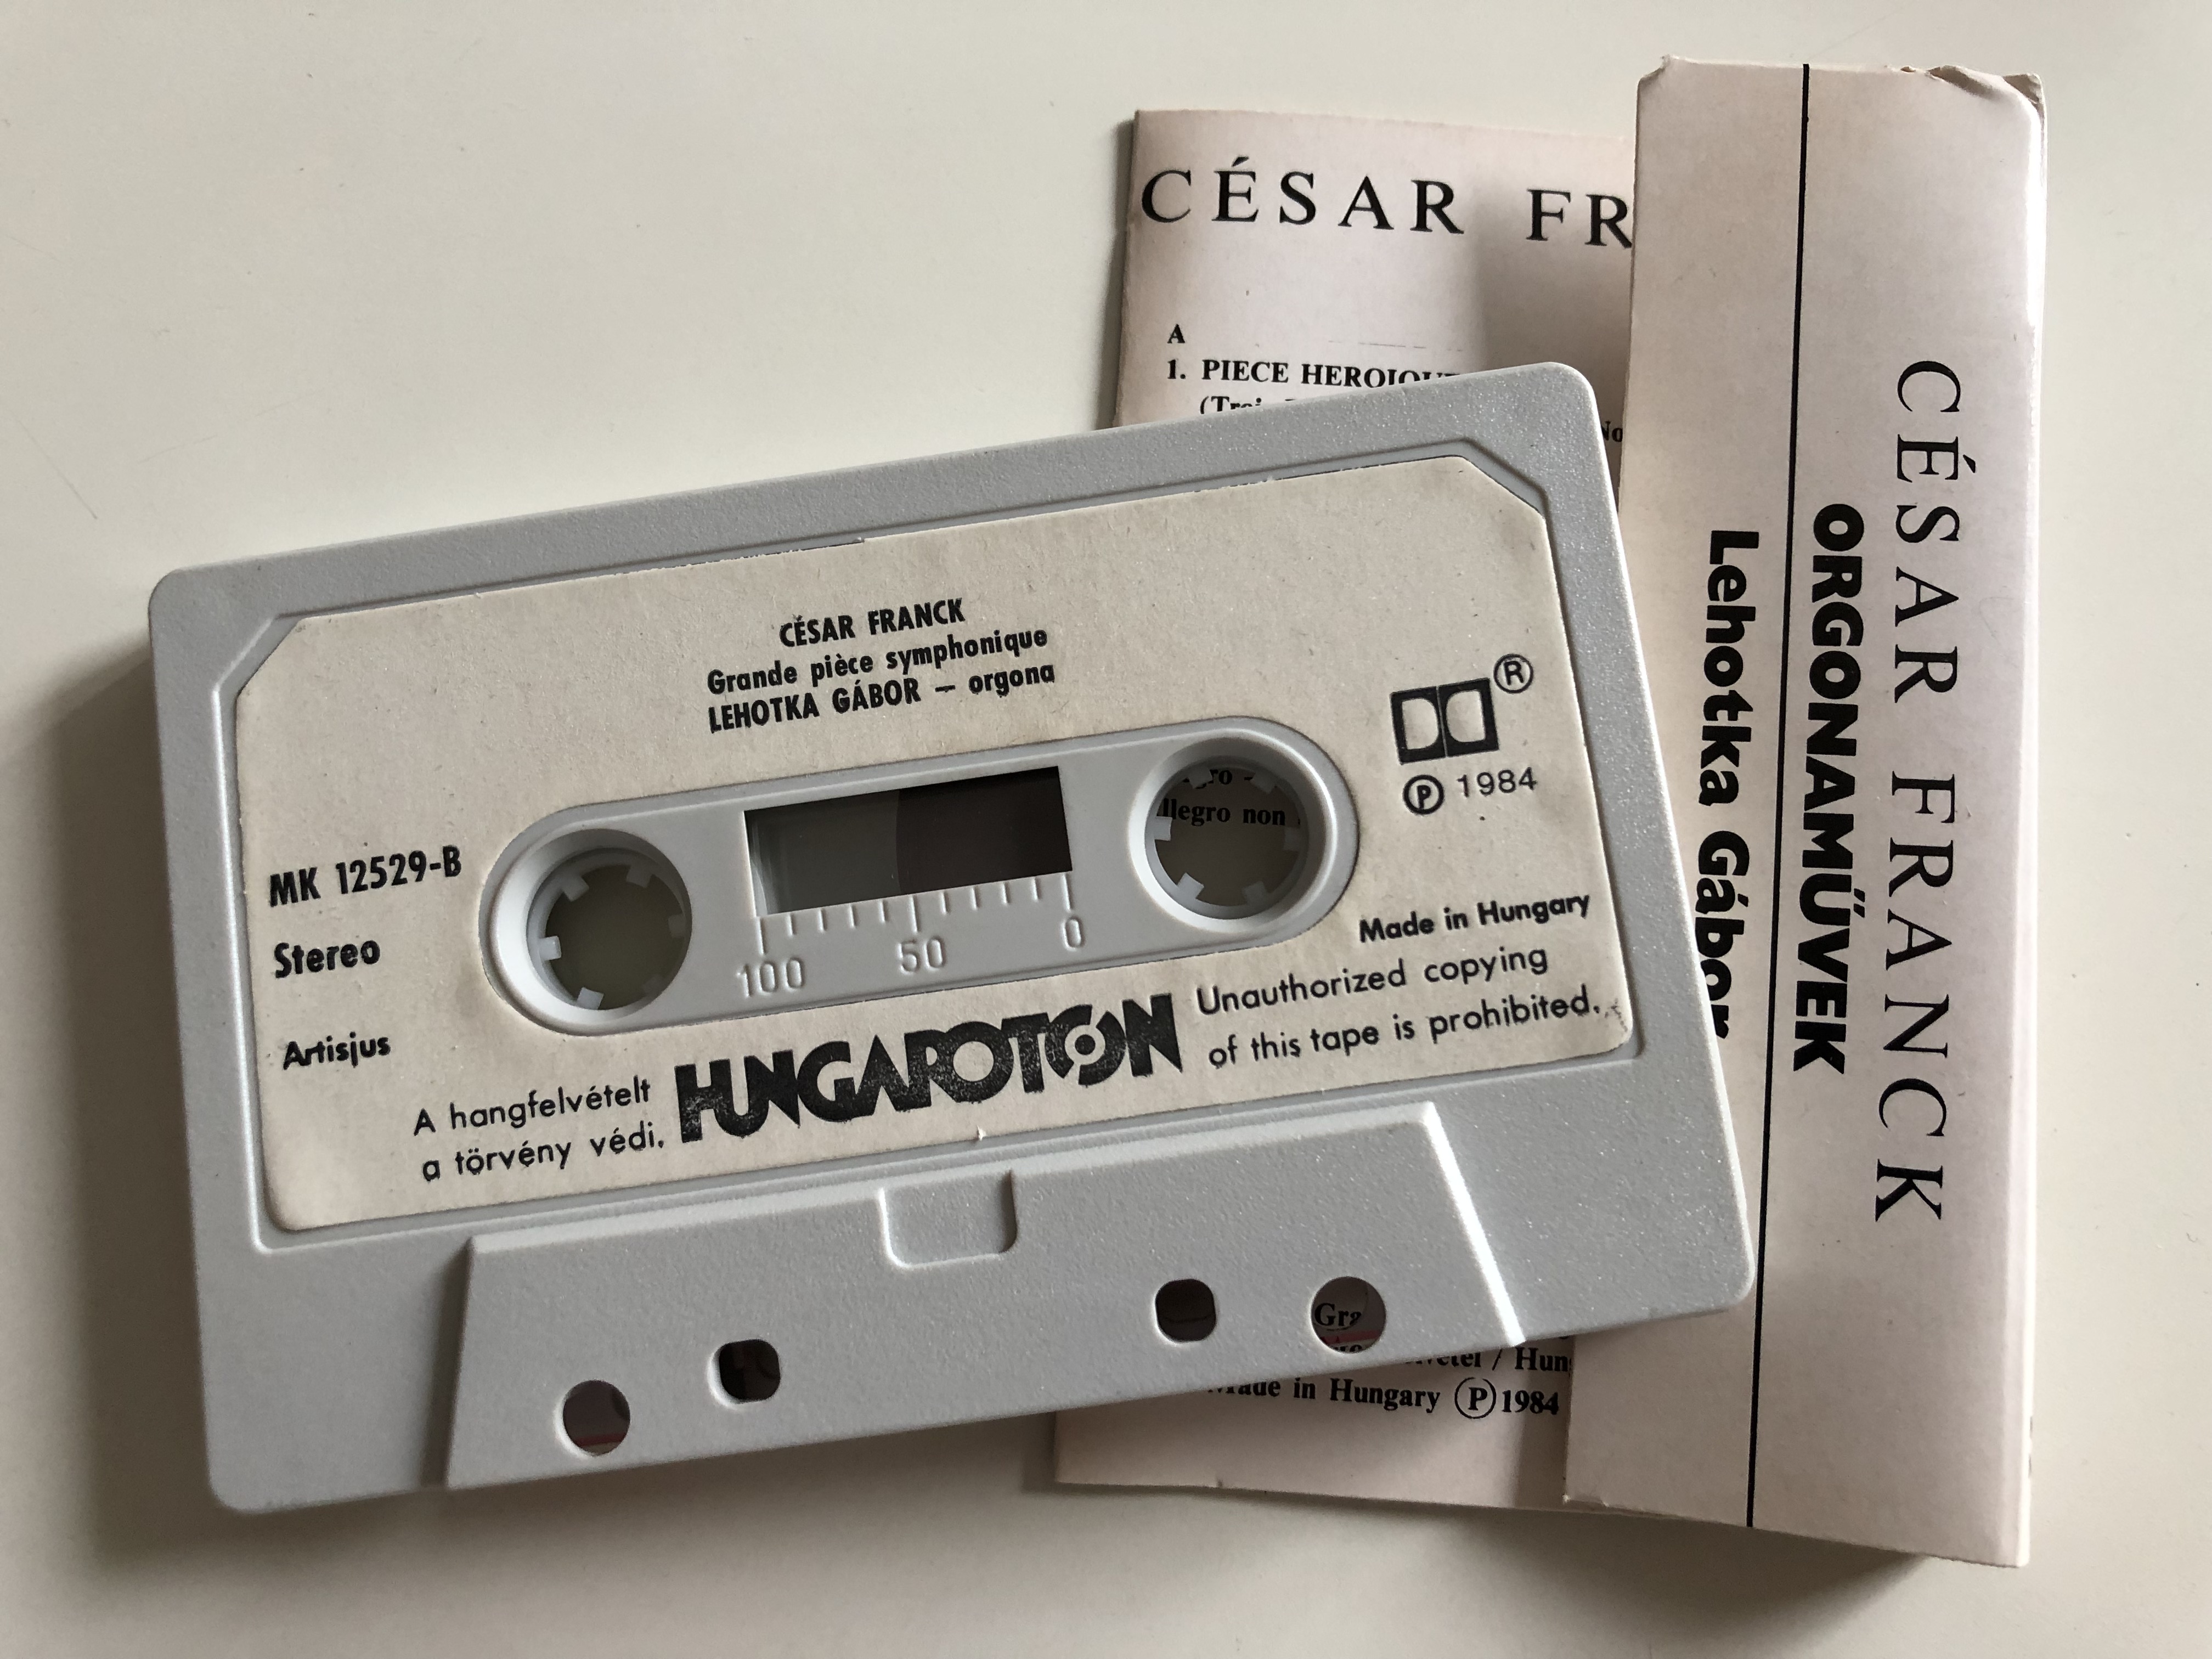 c-sar-franck-organ-works-g-bor-lehotka-hungaroton-cassette-stereo-mk-12529-3-.jpg